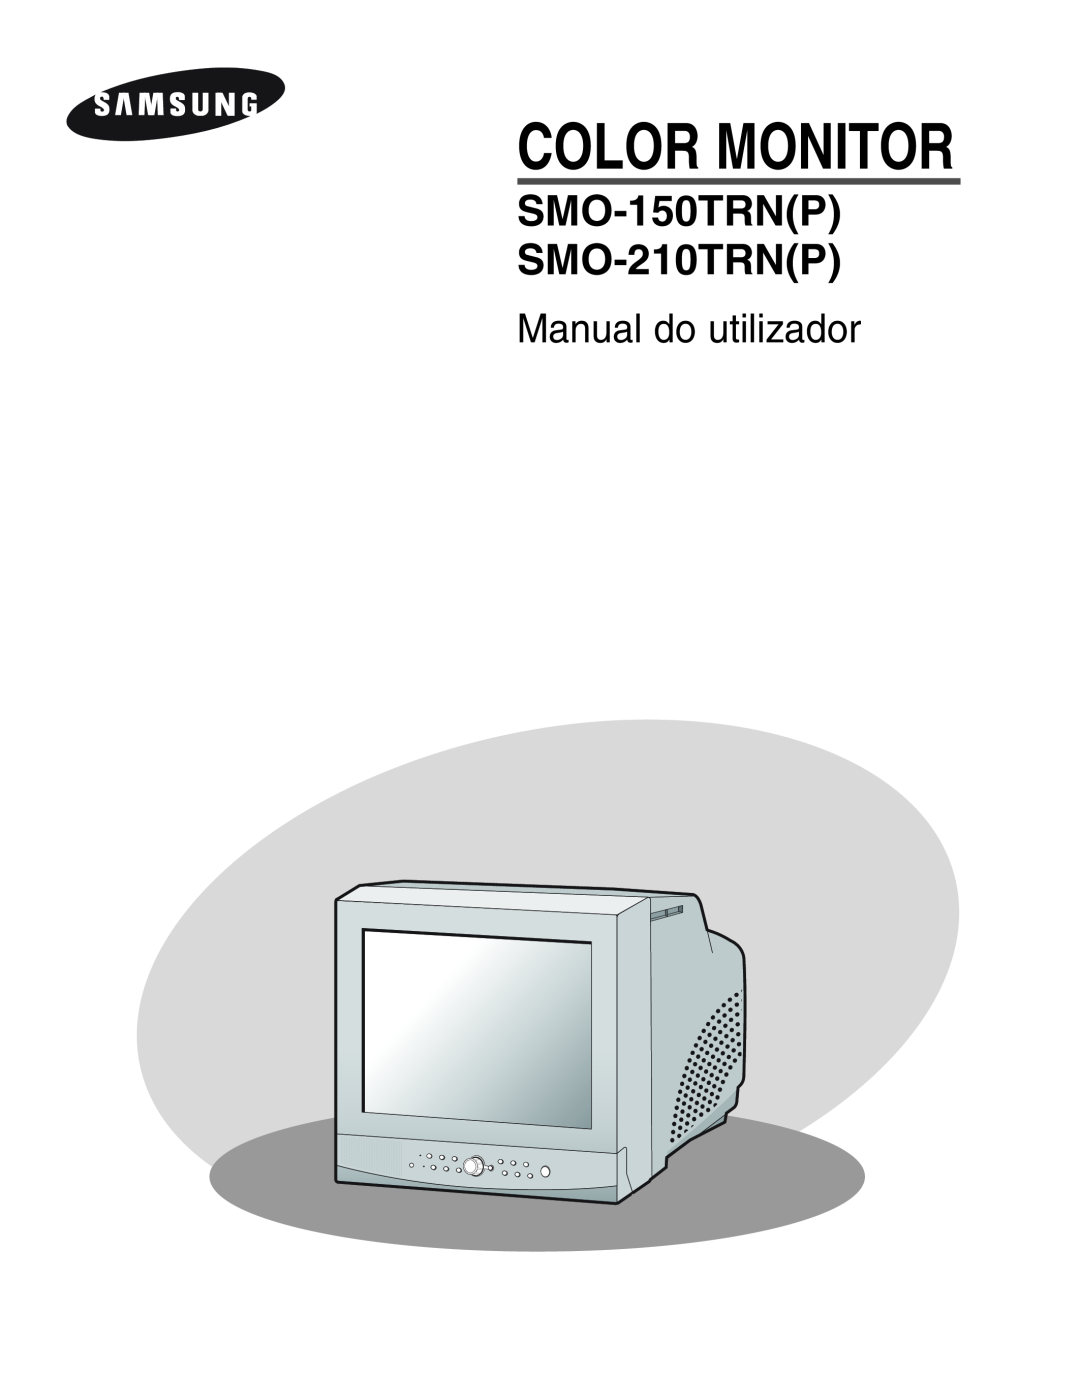 Samsung SMO-210TRP, SMO-210MP/UMG manual Manual do utilizador, Color Monitor, SMO-150TRNP SMO-210TRNP 